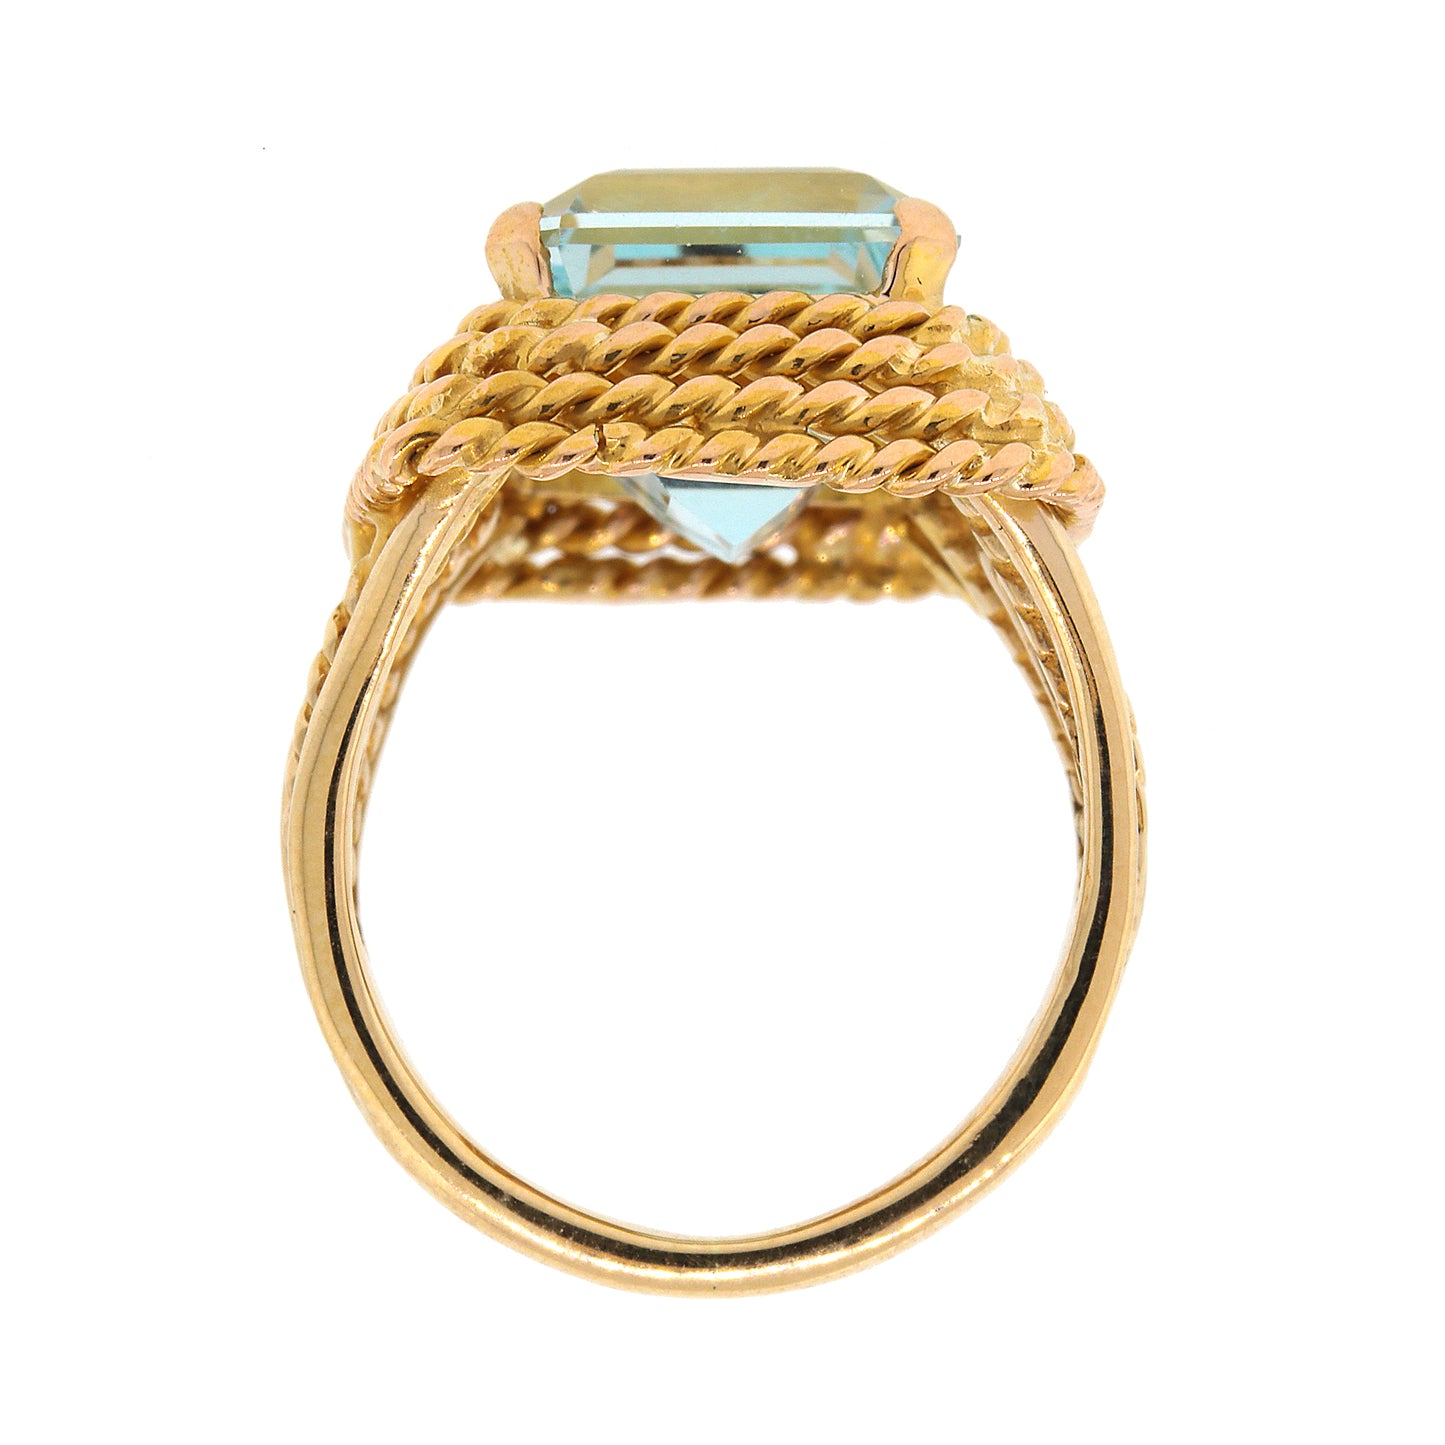 Emerald Cut Aquamariine Ring